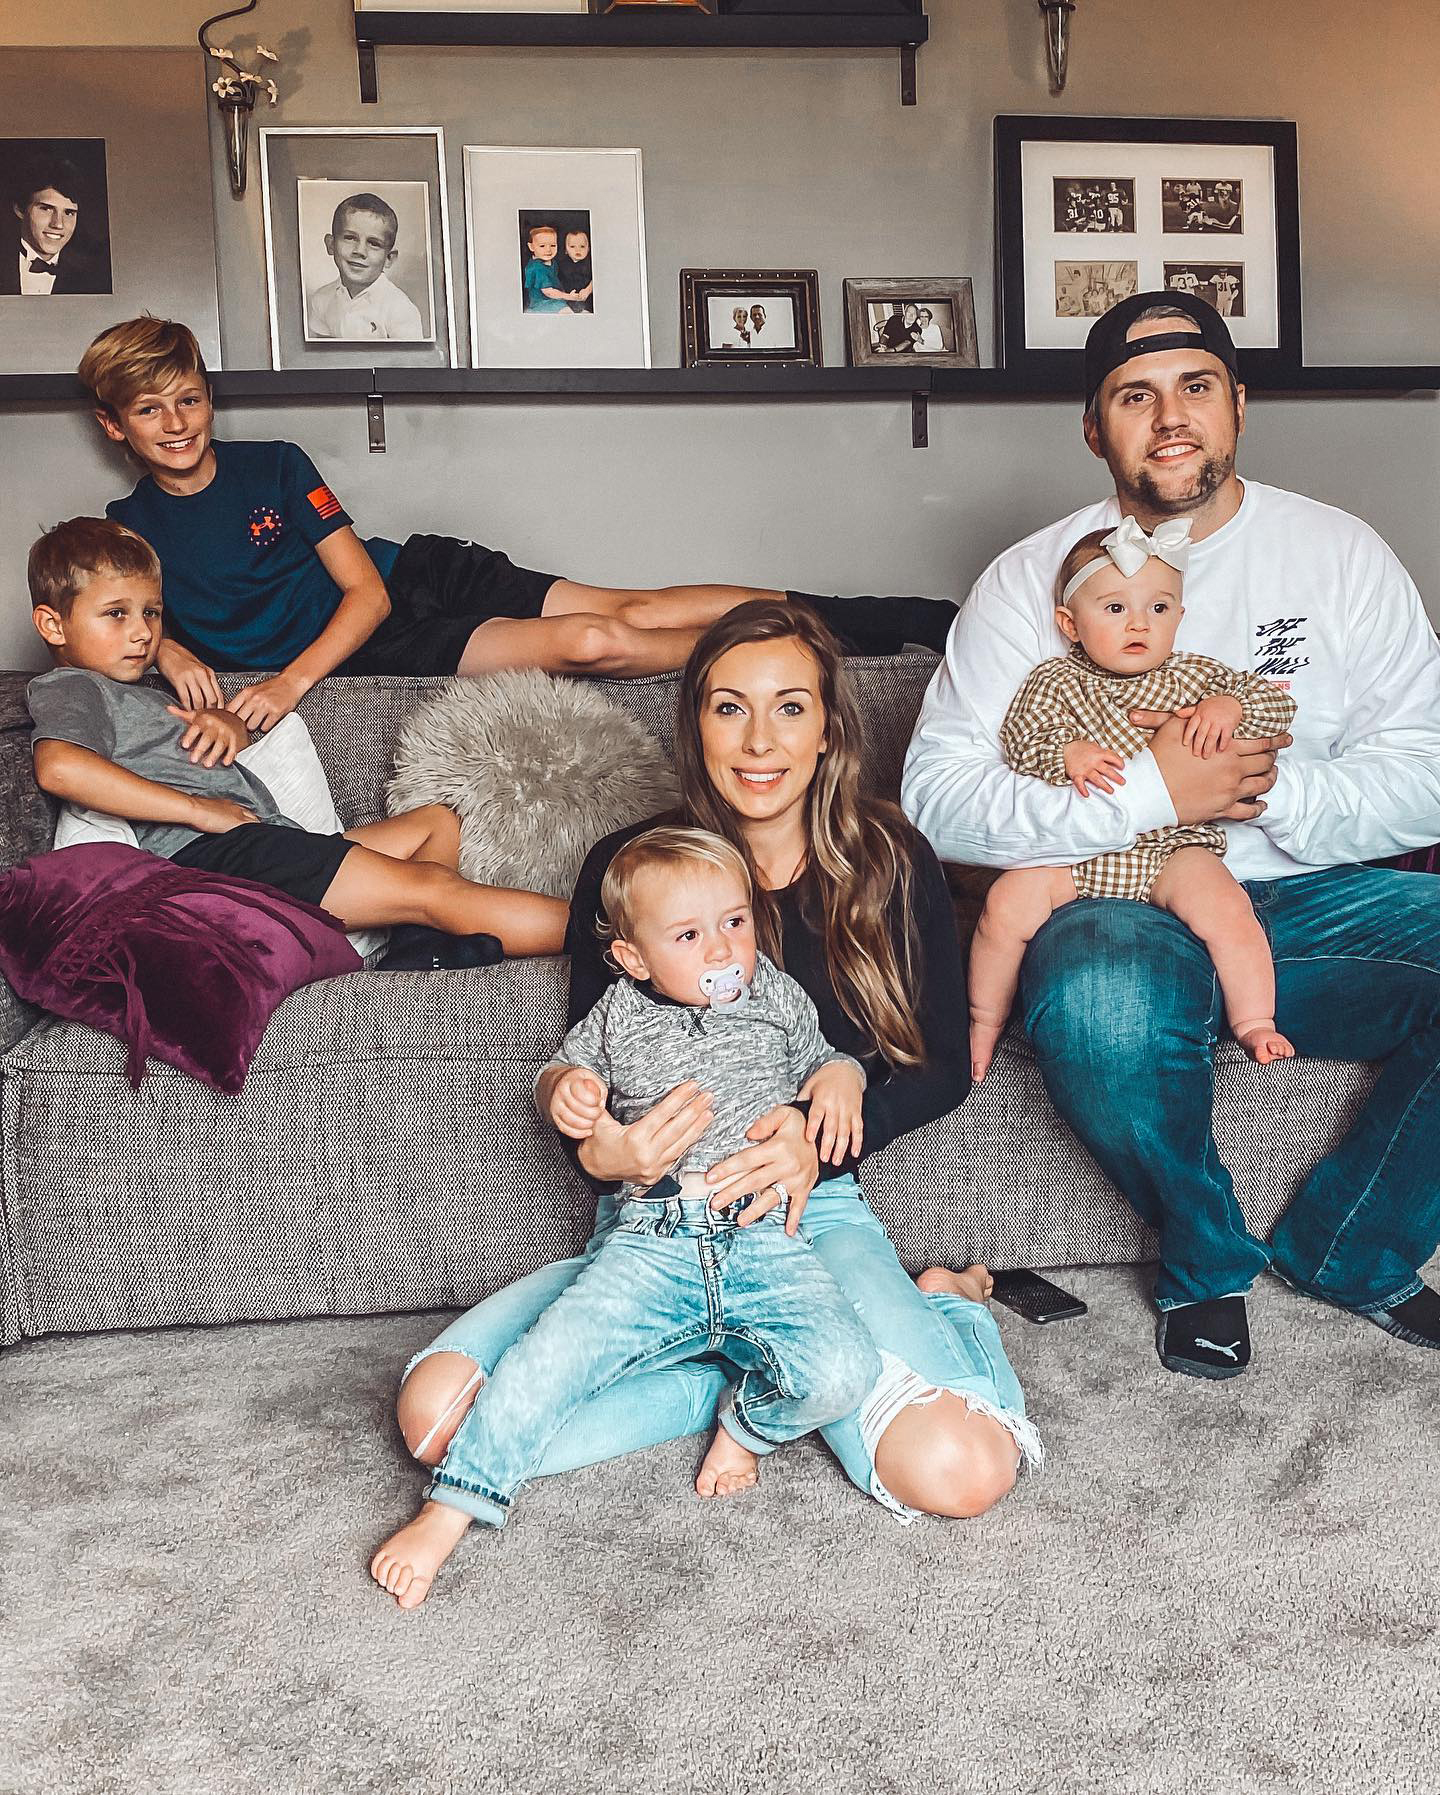 Teen Mom's Ryan, Mackenzie Edwards' Family Album With 4 Kids: Pics